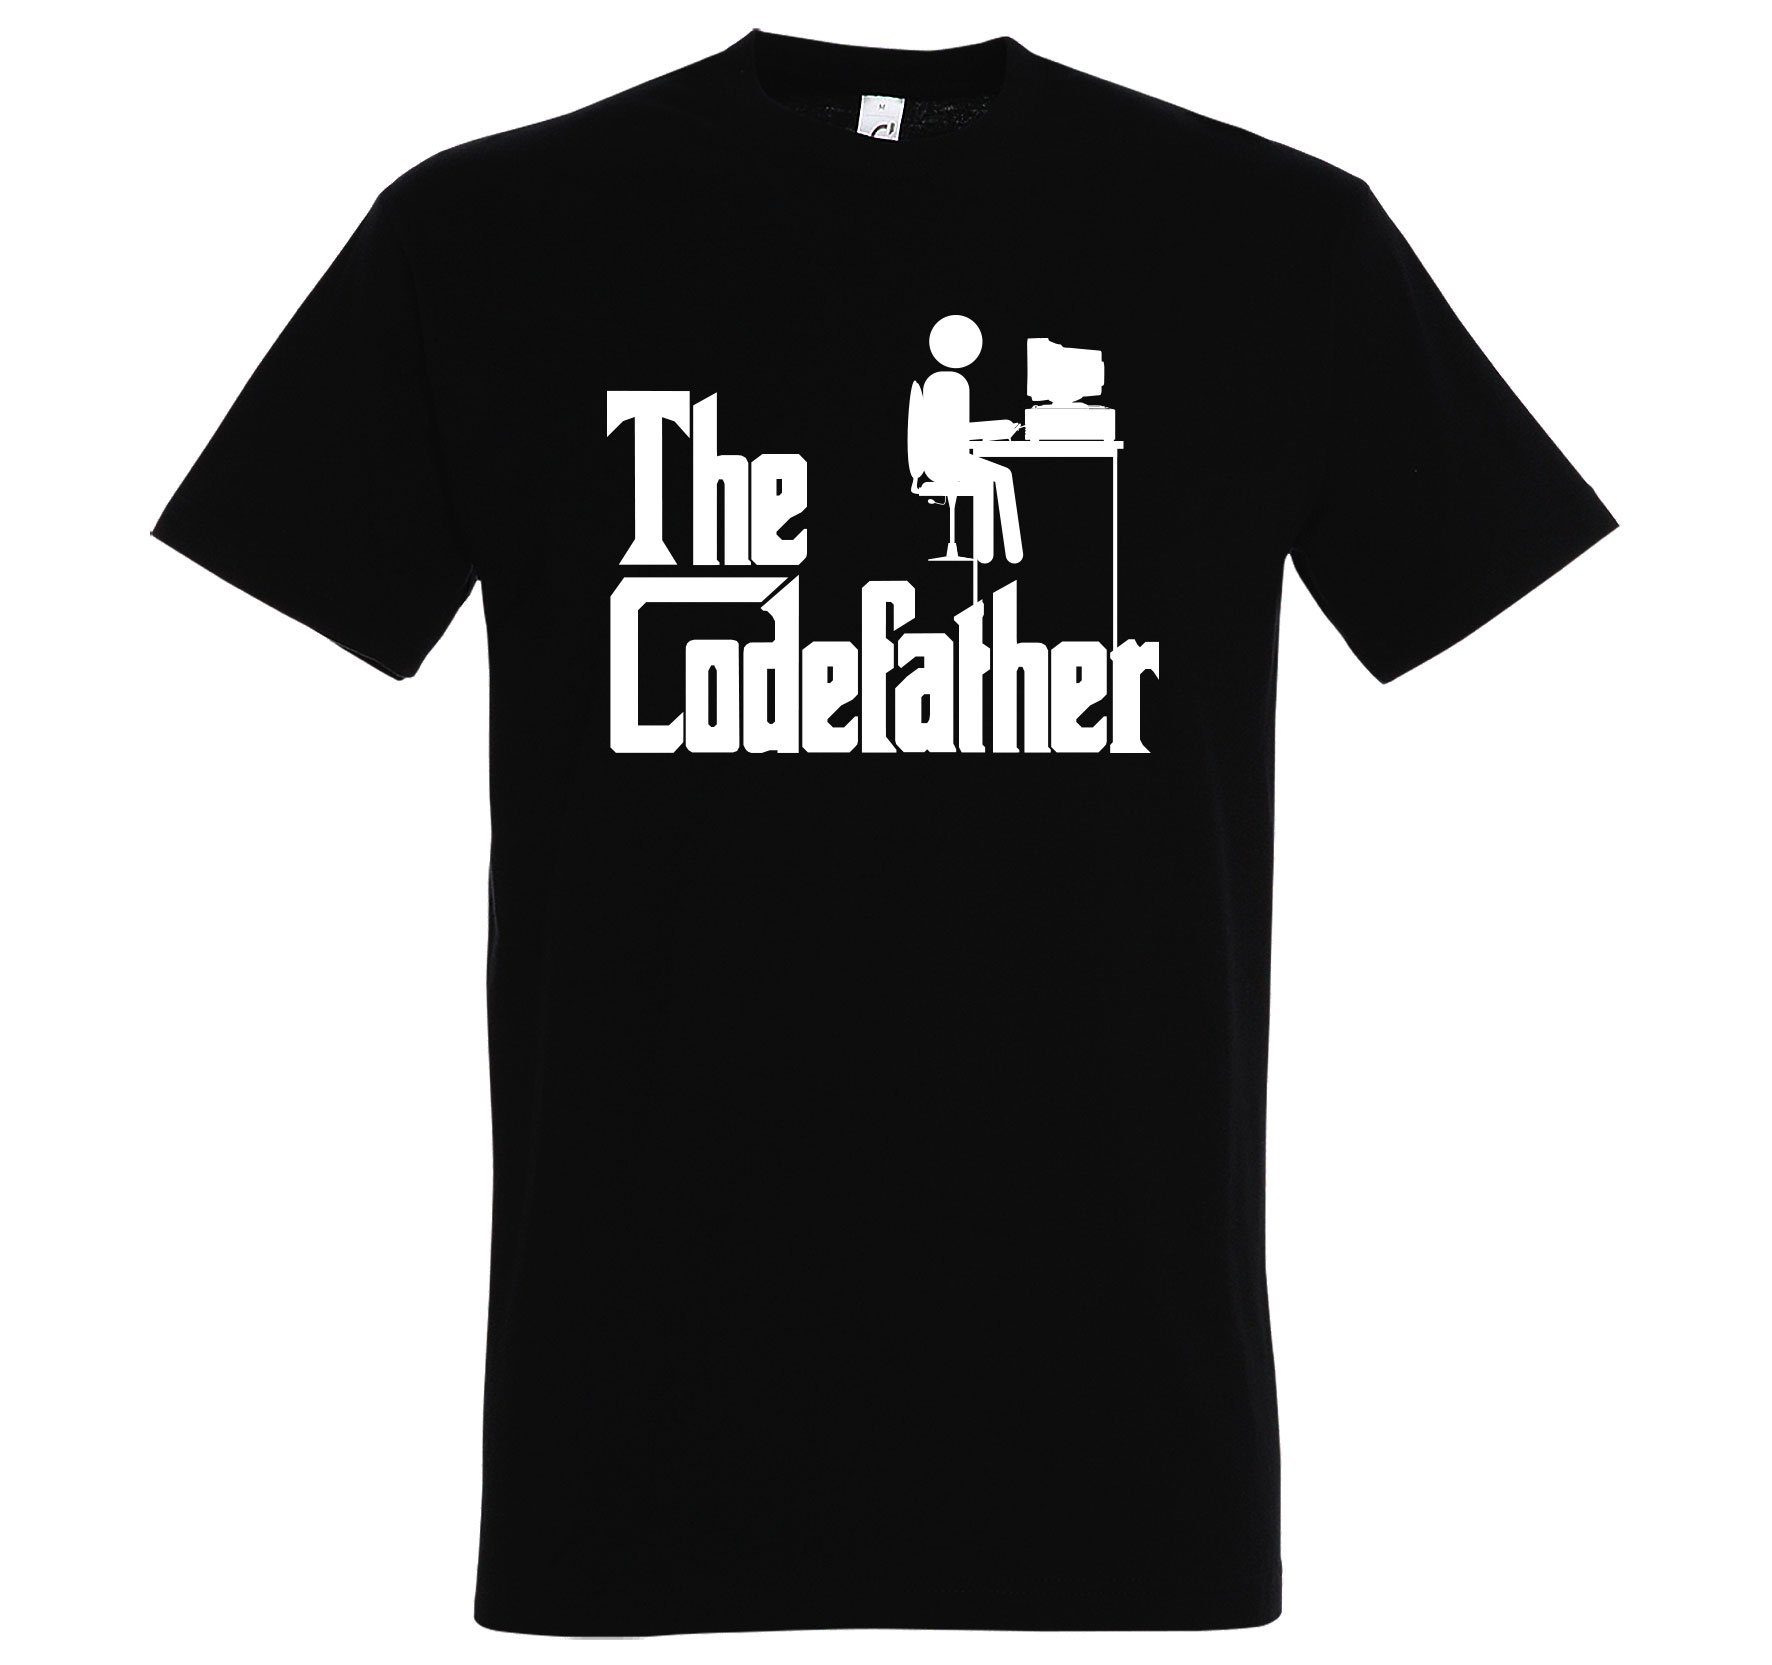 T-Shirt The Frontprint lustigem mit Herren Youth Designz Codefather T-Shirt Schwarz